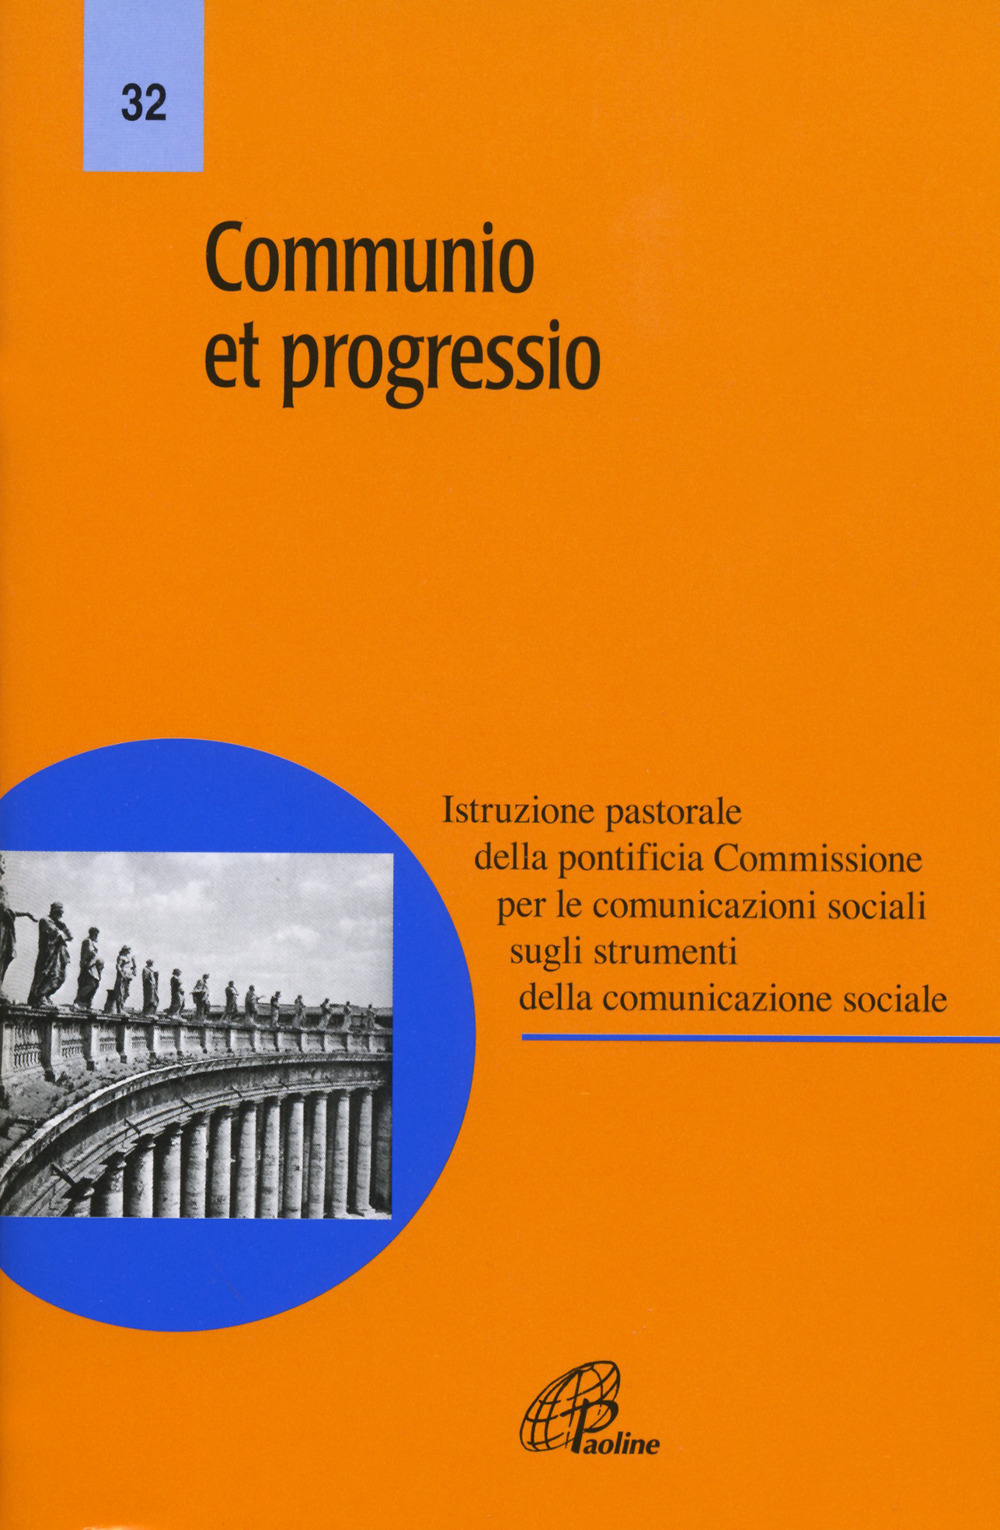 Communio et progressio. Istruzione pastorale della pontificia Commissione per le comunicazioni sociali sugli strumenti della comunicazione sociale